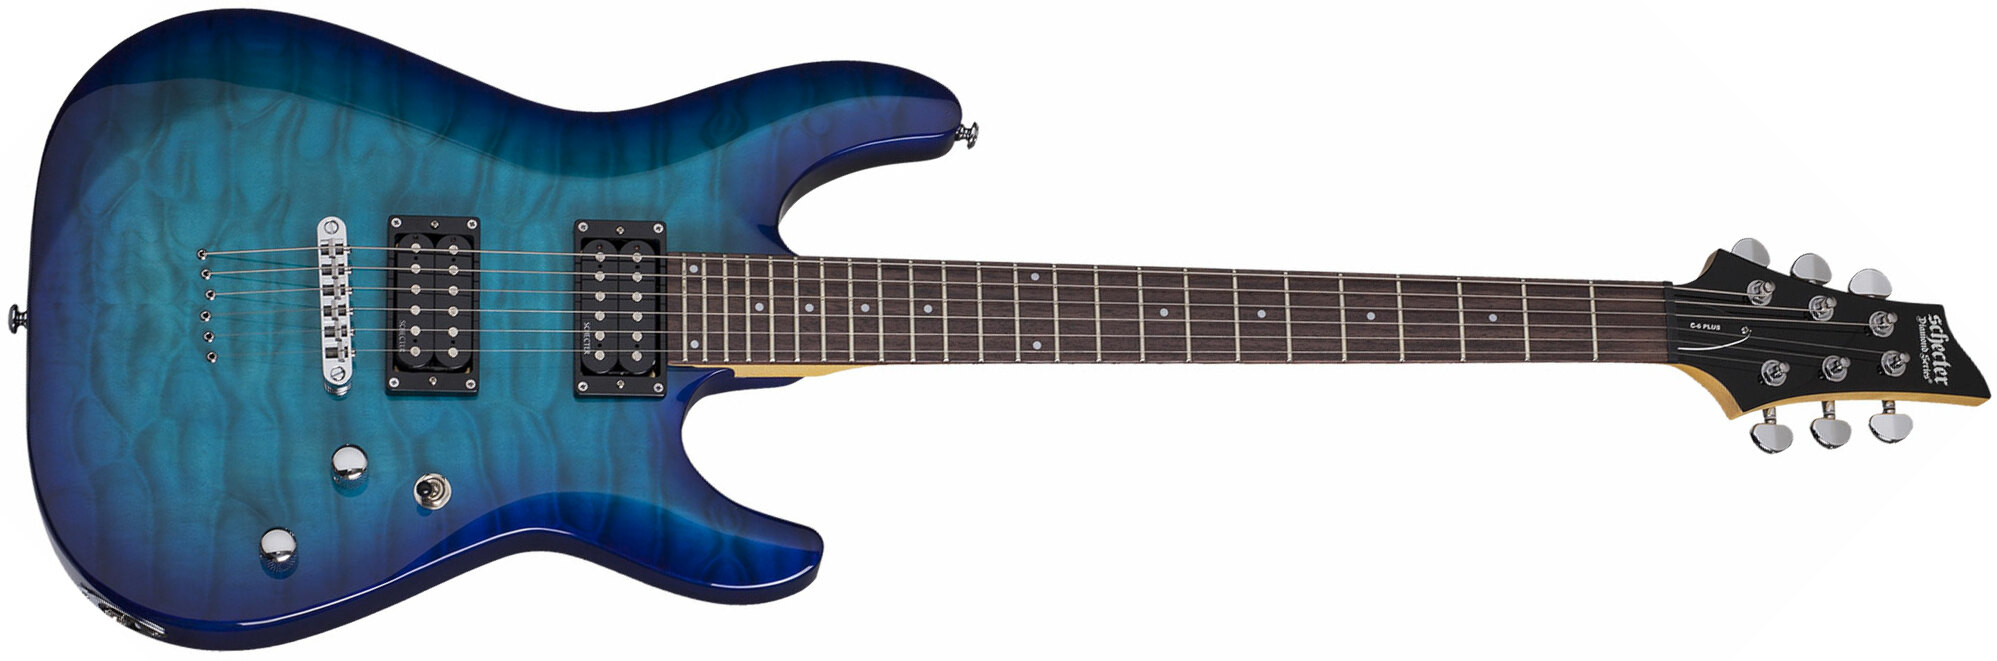 Schecter C-6 Plus 2h Ht Rw - Ocean Blue Burst - Guitarra eléctrica de doble corte. - Main picture